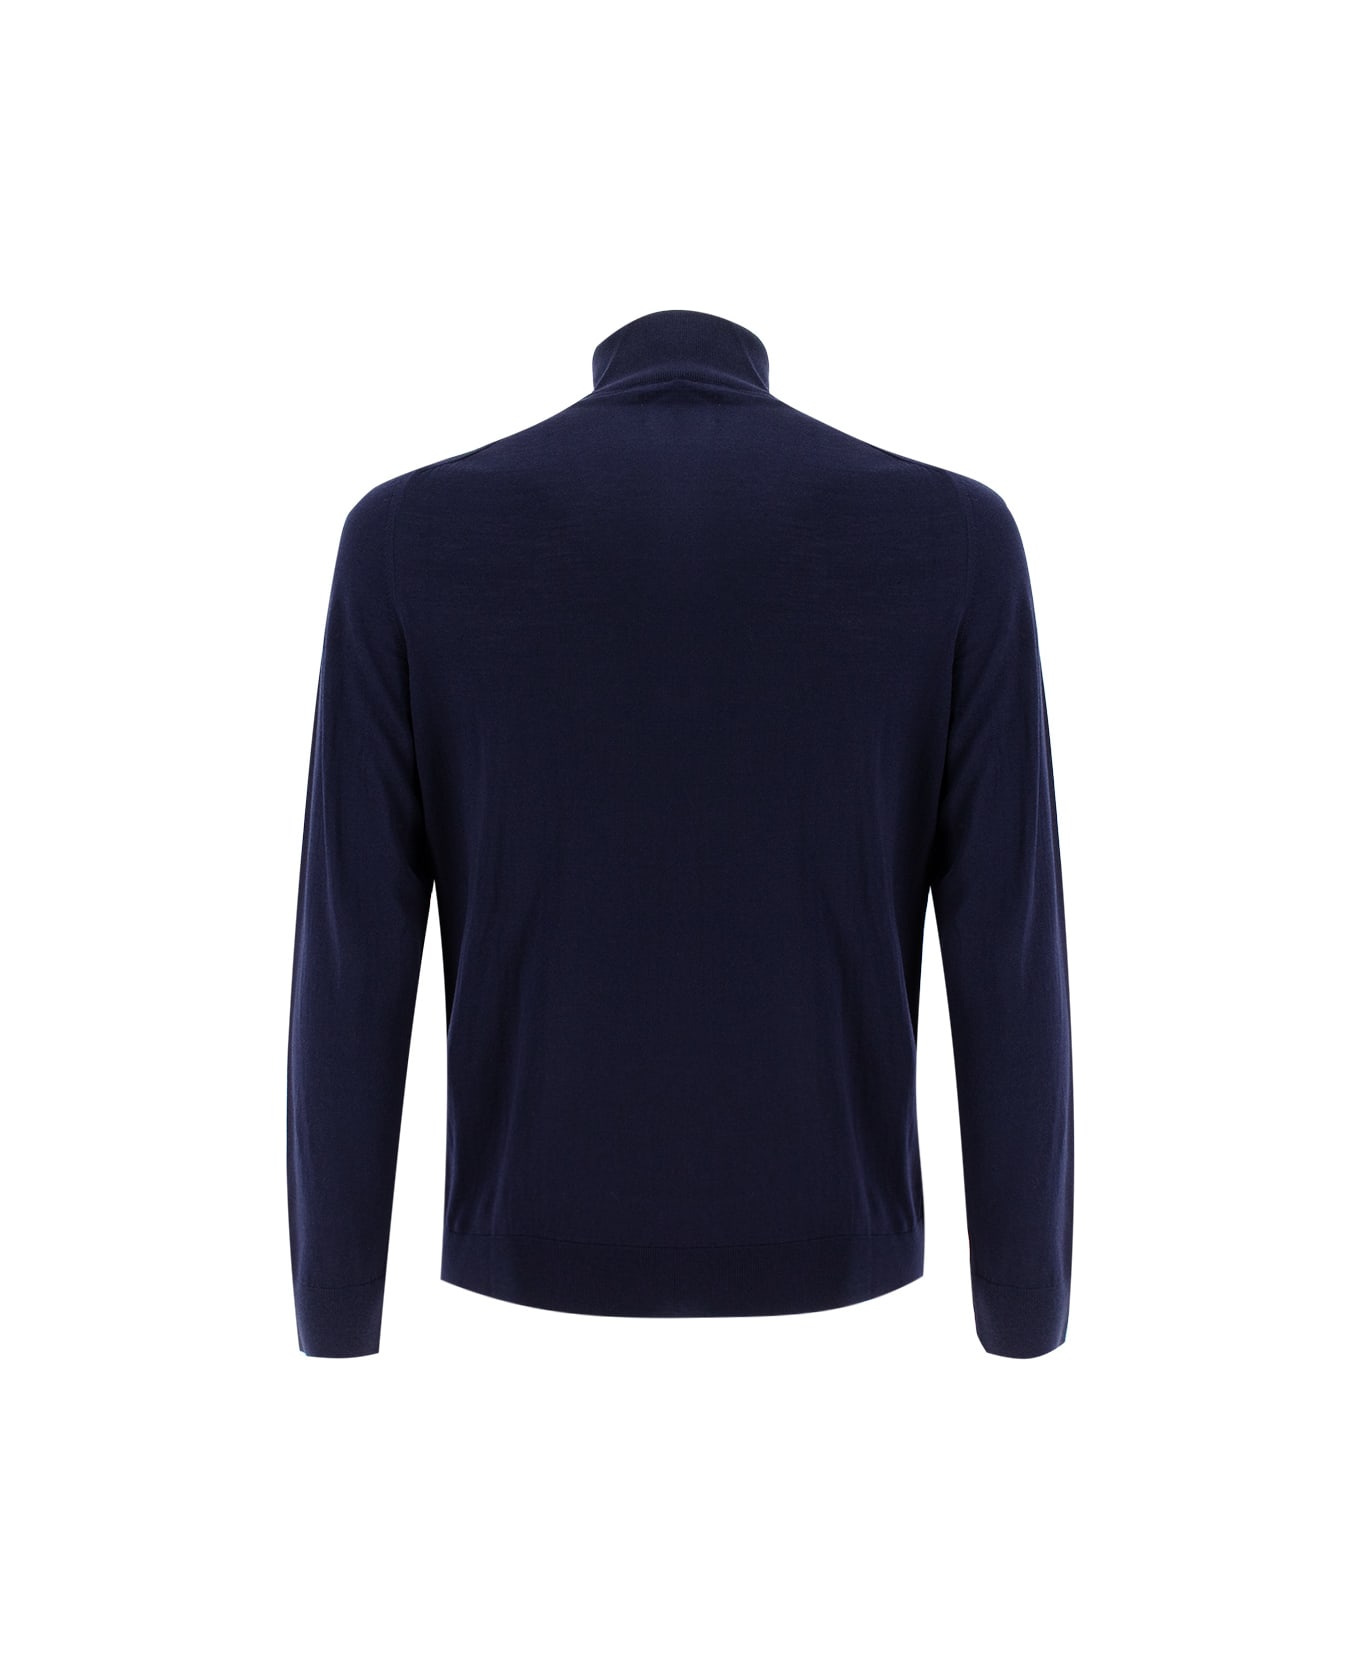 Kiton Sweater - NAVY BLUE ニットウェア